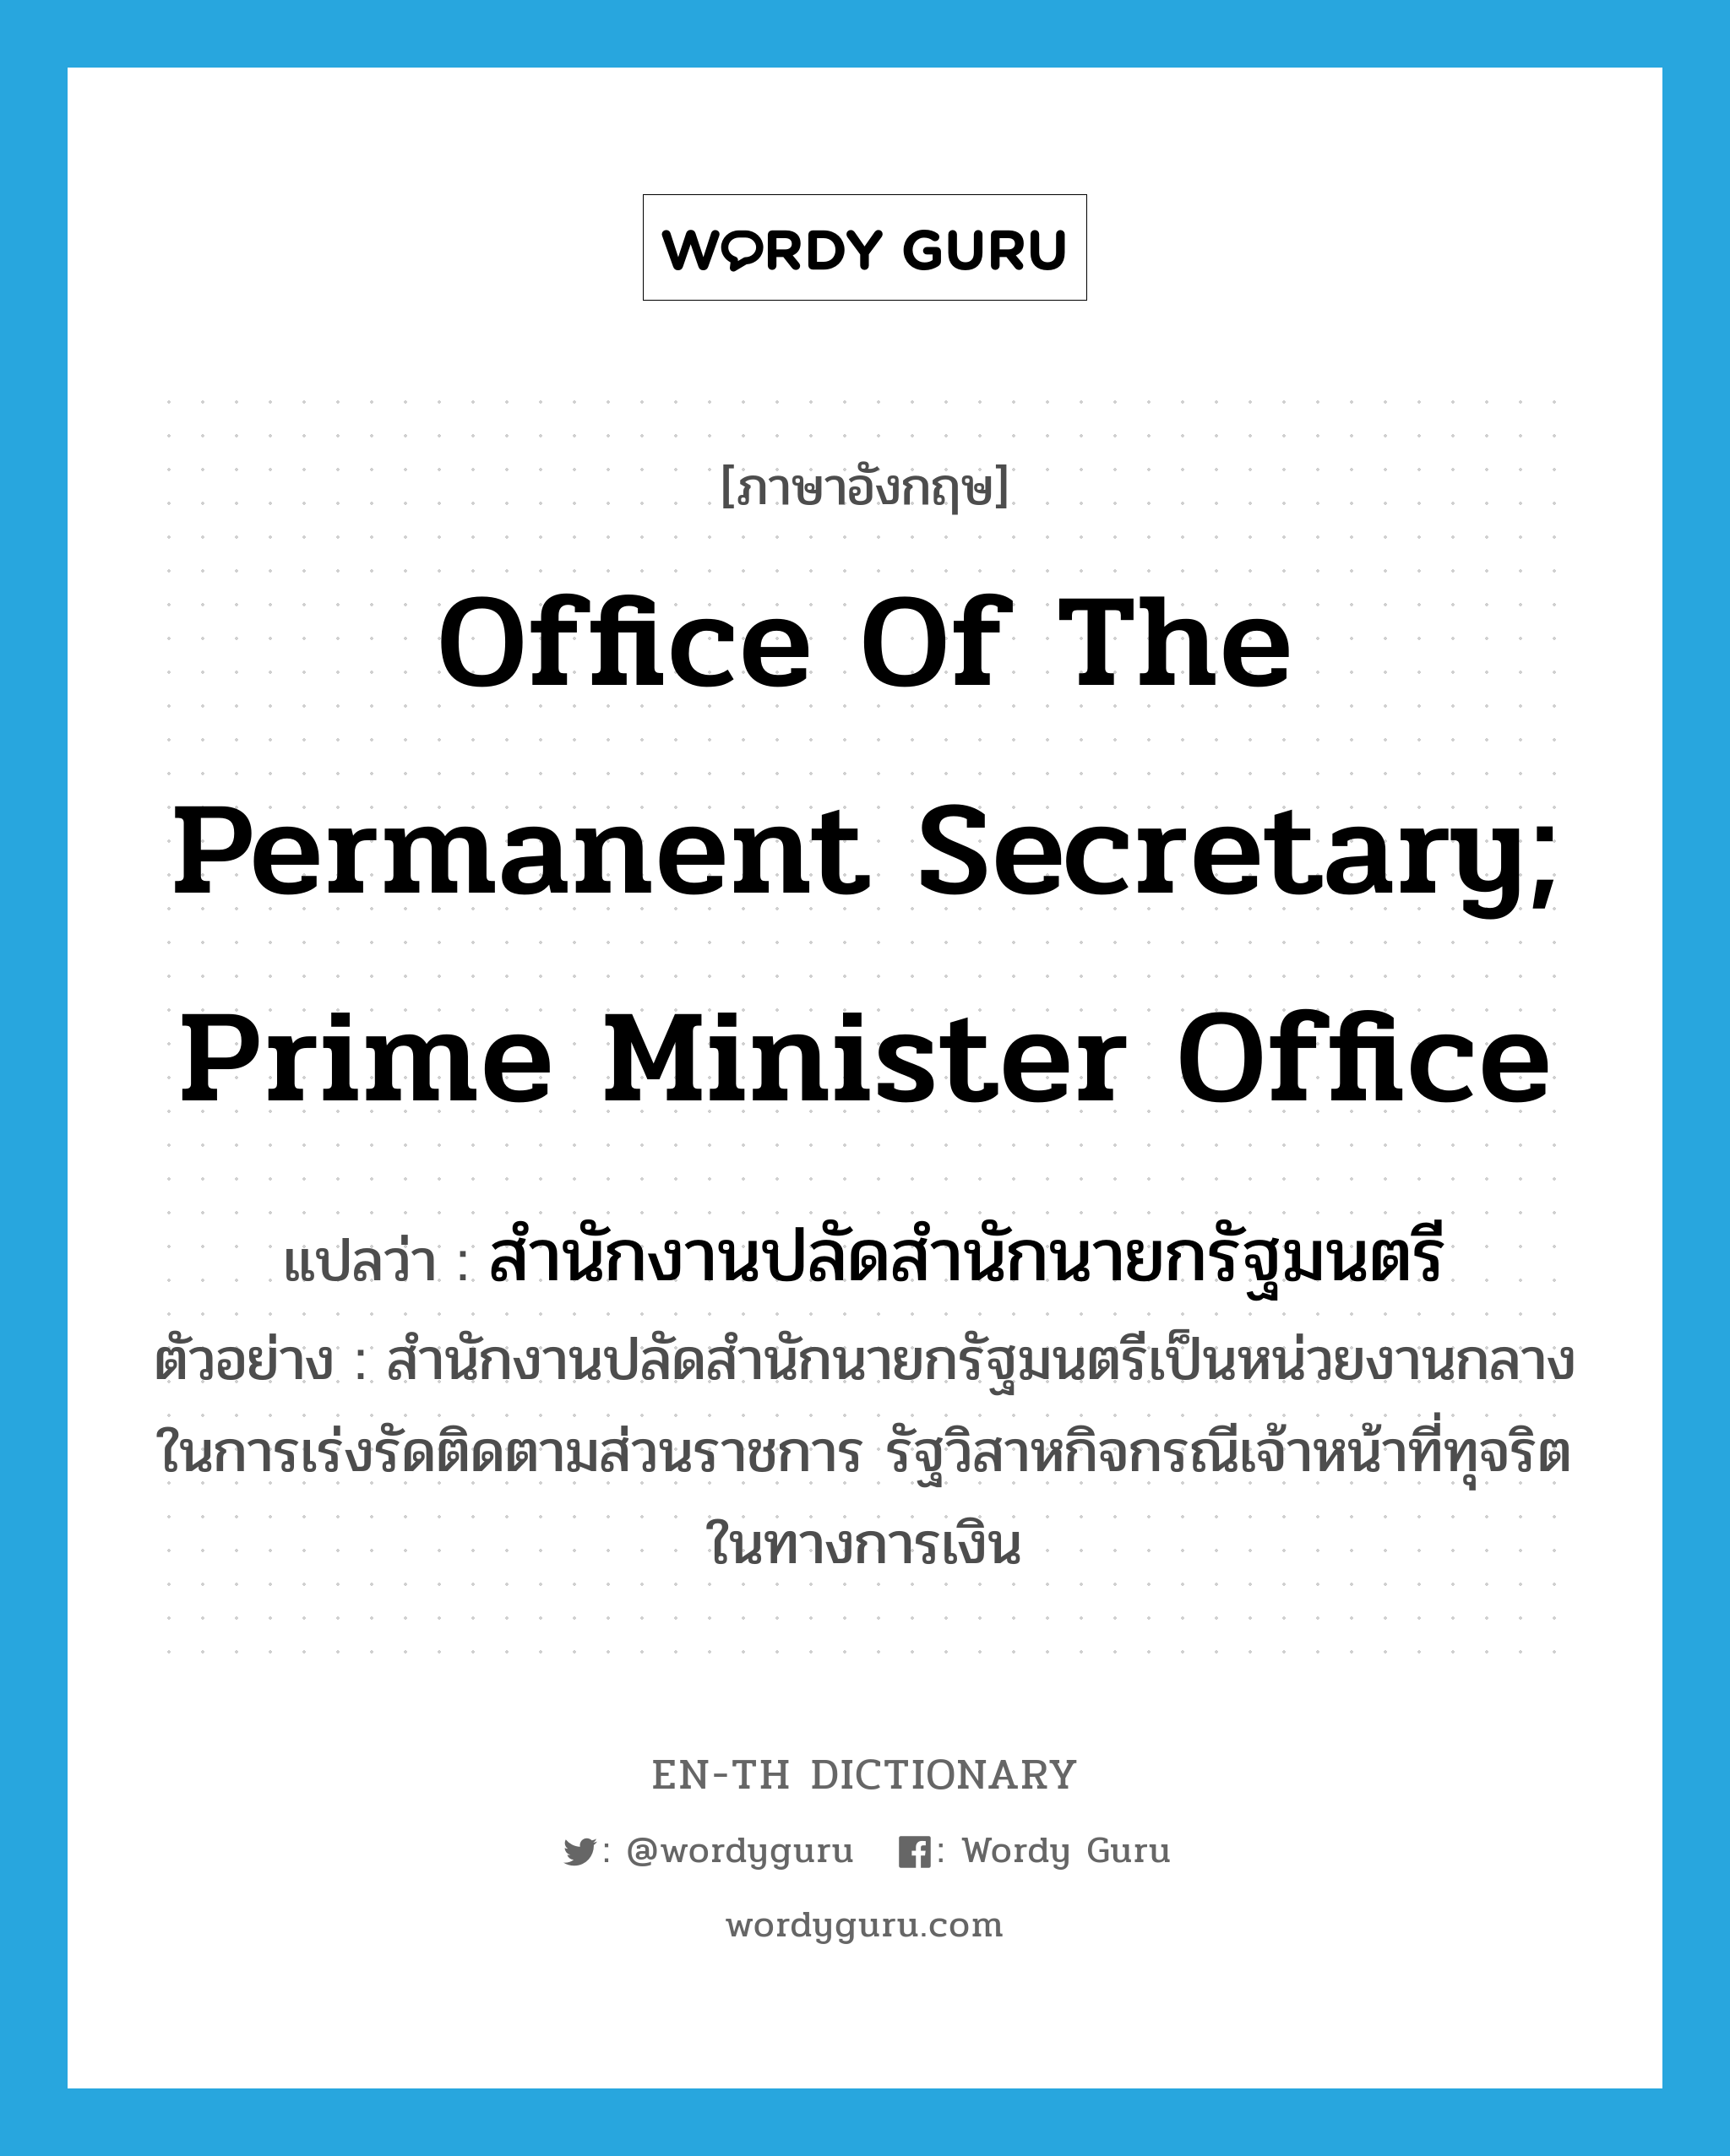 สำนักงานปลัดสำนักนายกรัฐมนตรี ภาษาอังกฤษ?, คำศัพท์ภาษาอังกฤษ สำนักงานปลัดสำนักนายกรัฐมนตรี แปลว่า Office of the Permanent Secretary; Prime Minister Office ประเภท N ตัวอย่าง สำนักงานปลัดสำนักนายกรัฐมนตรีเป็นหน่วยงานกลางในการเร่งรัดติดตามส่วนราชการ รัฐวิสาหกิจกรณีเจ้าหน้าที่ทุจริตในทางการเงิน หมวด N